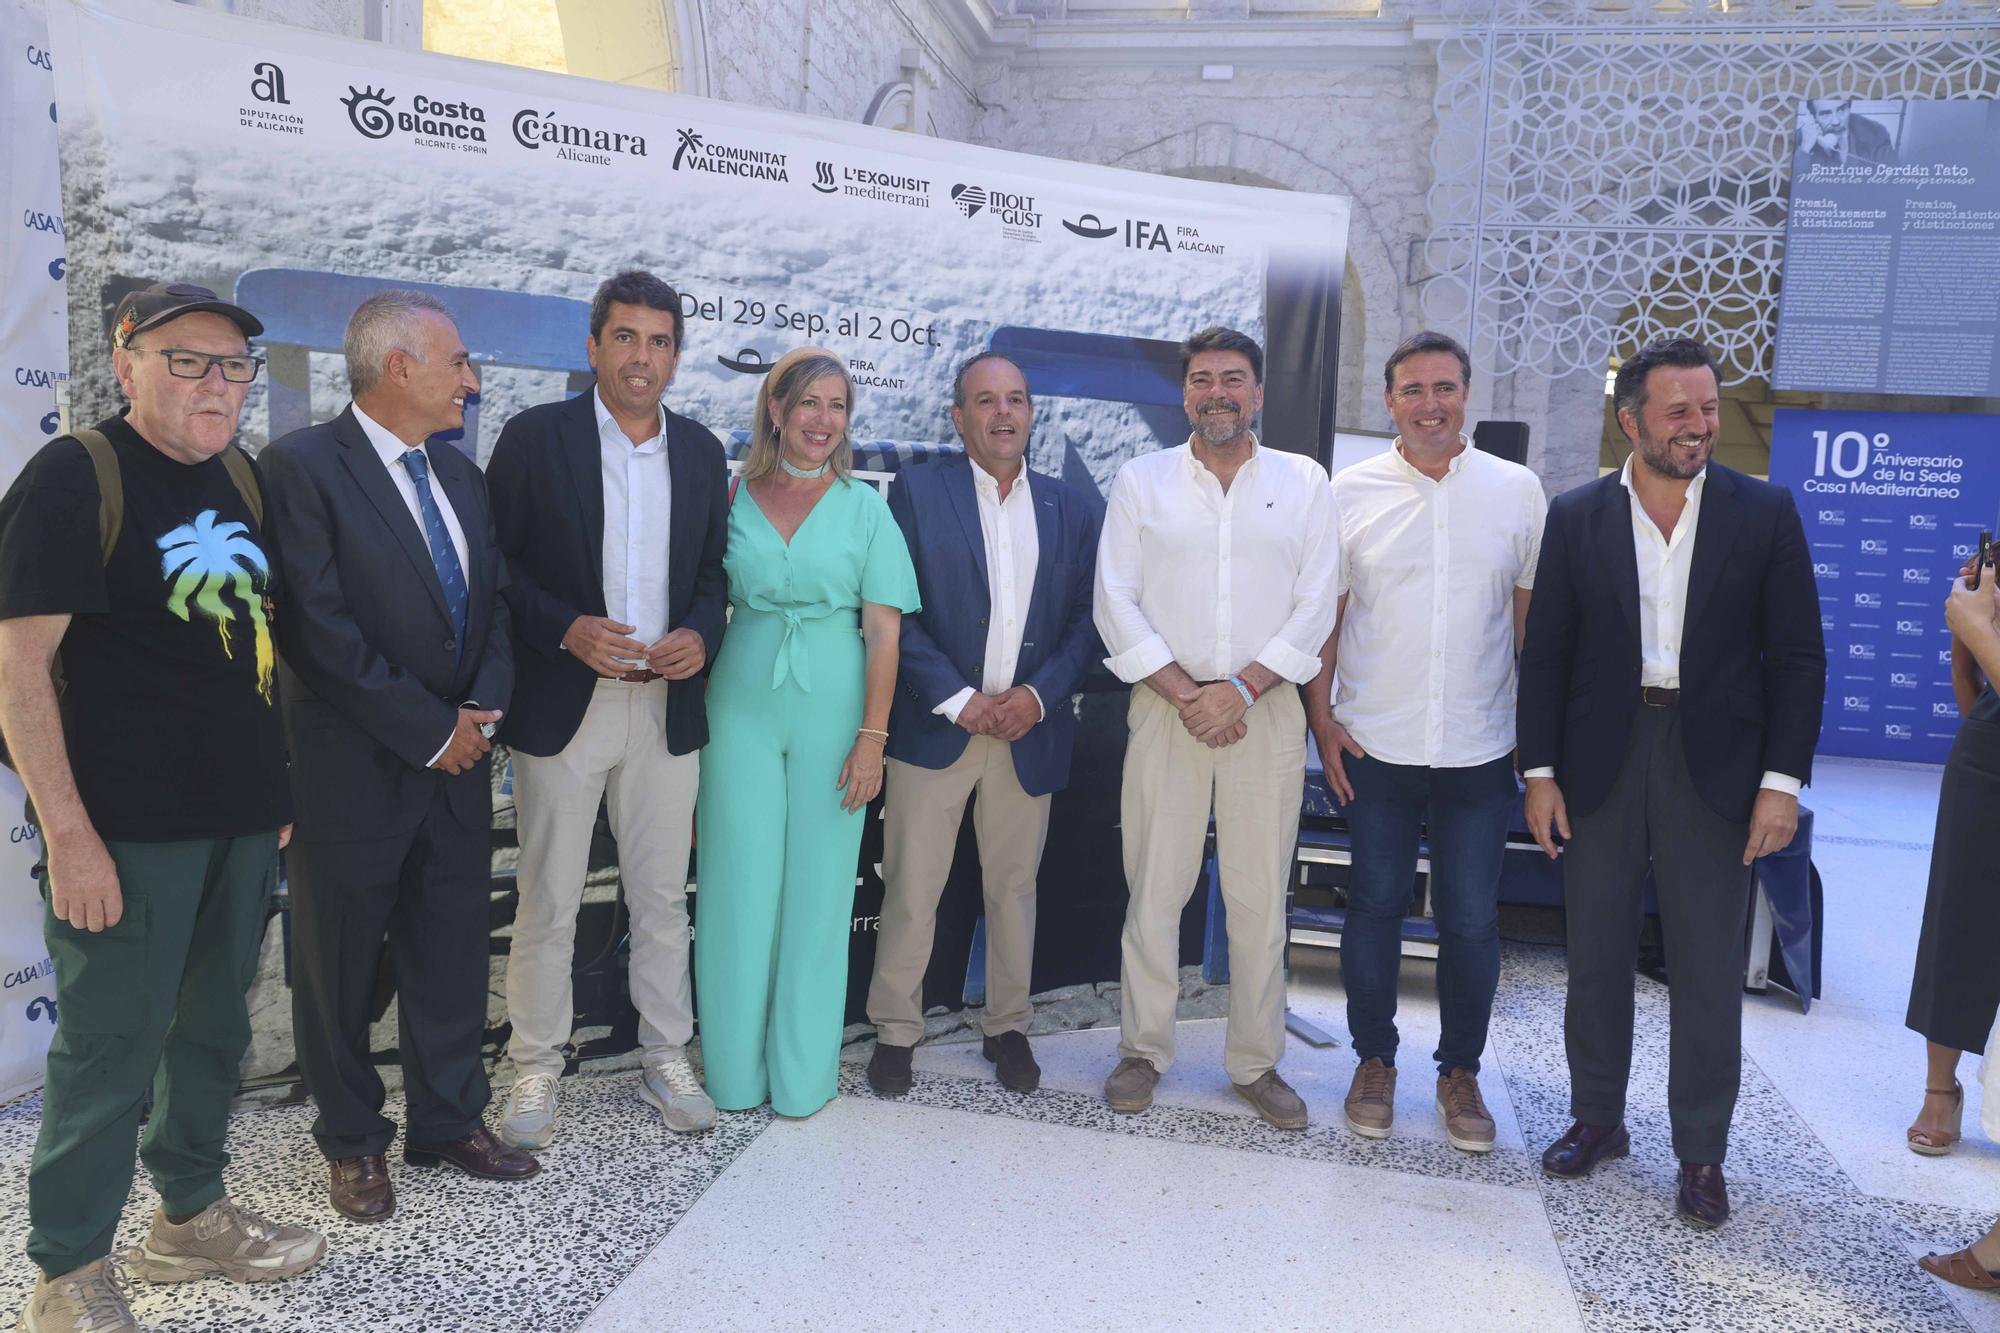 La feria Alicante Gastronómica da el salto internacional en su quinta edición al invitar a Grecia